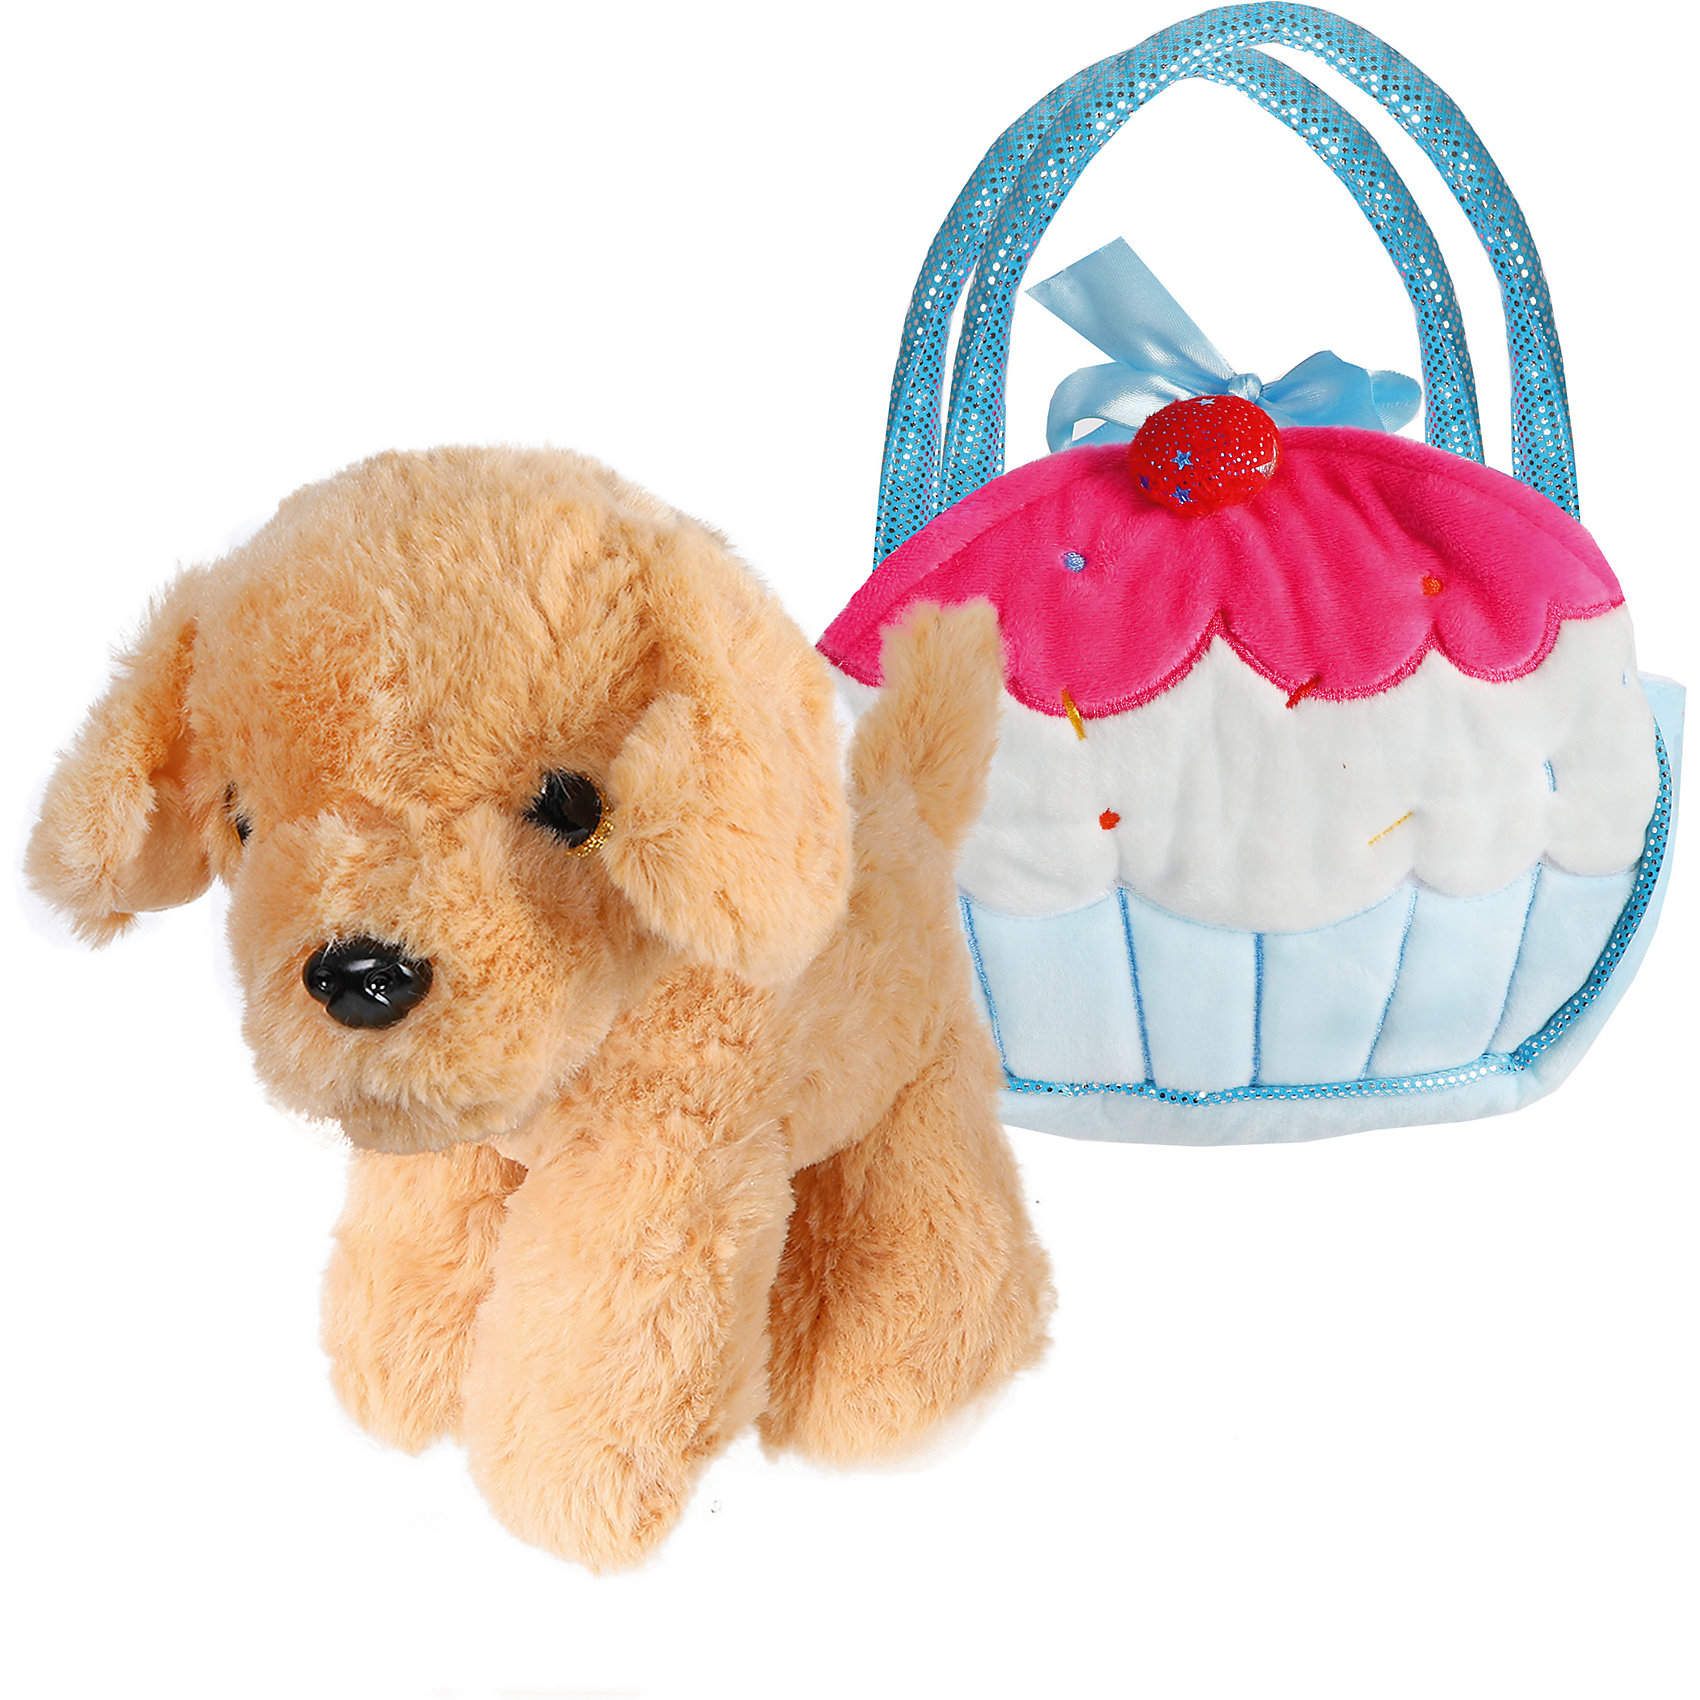 Мягкая игрушка "Щенок в сумочке-пирожное", 21 см, коричнево-голубая Fluffy Family 12969768